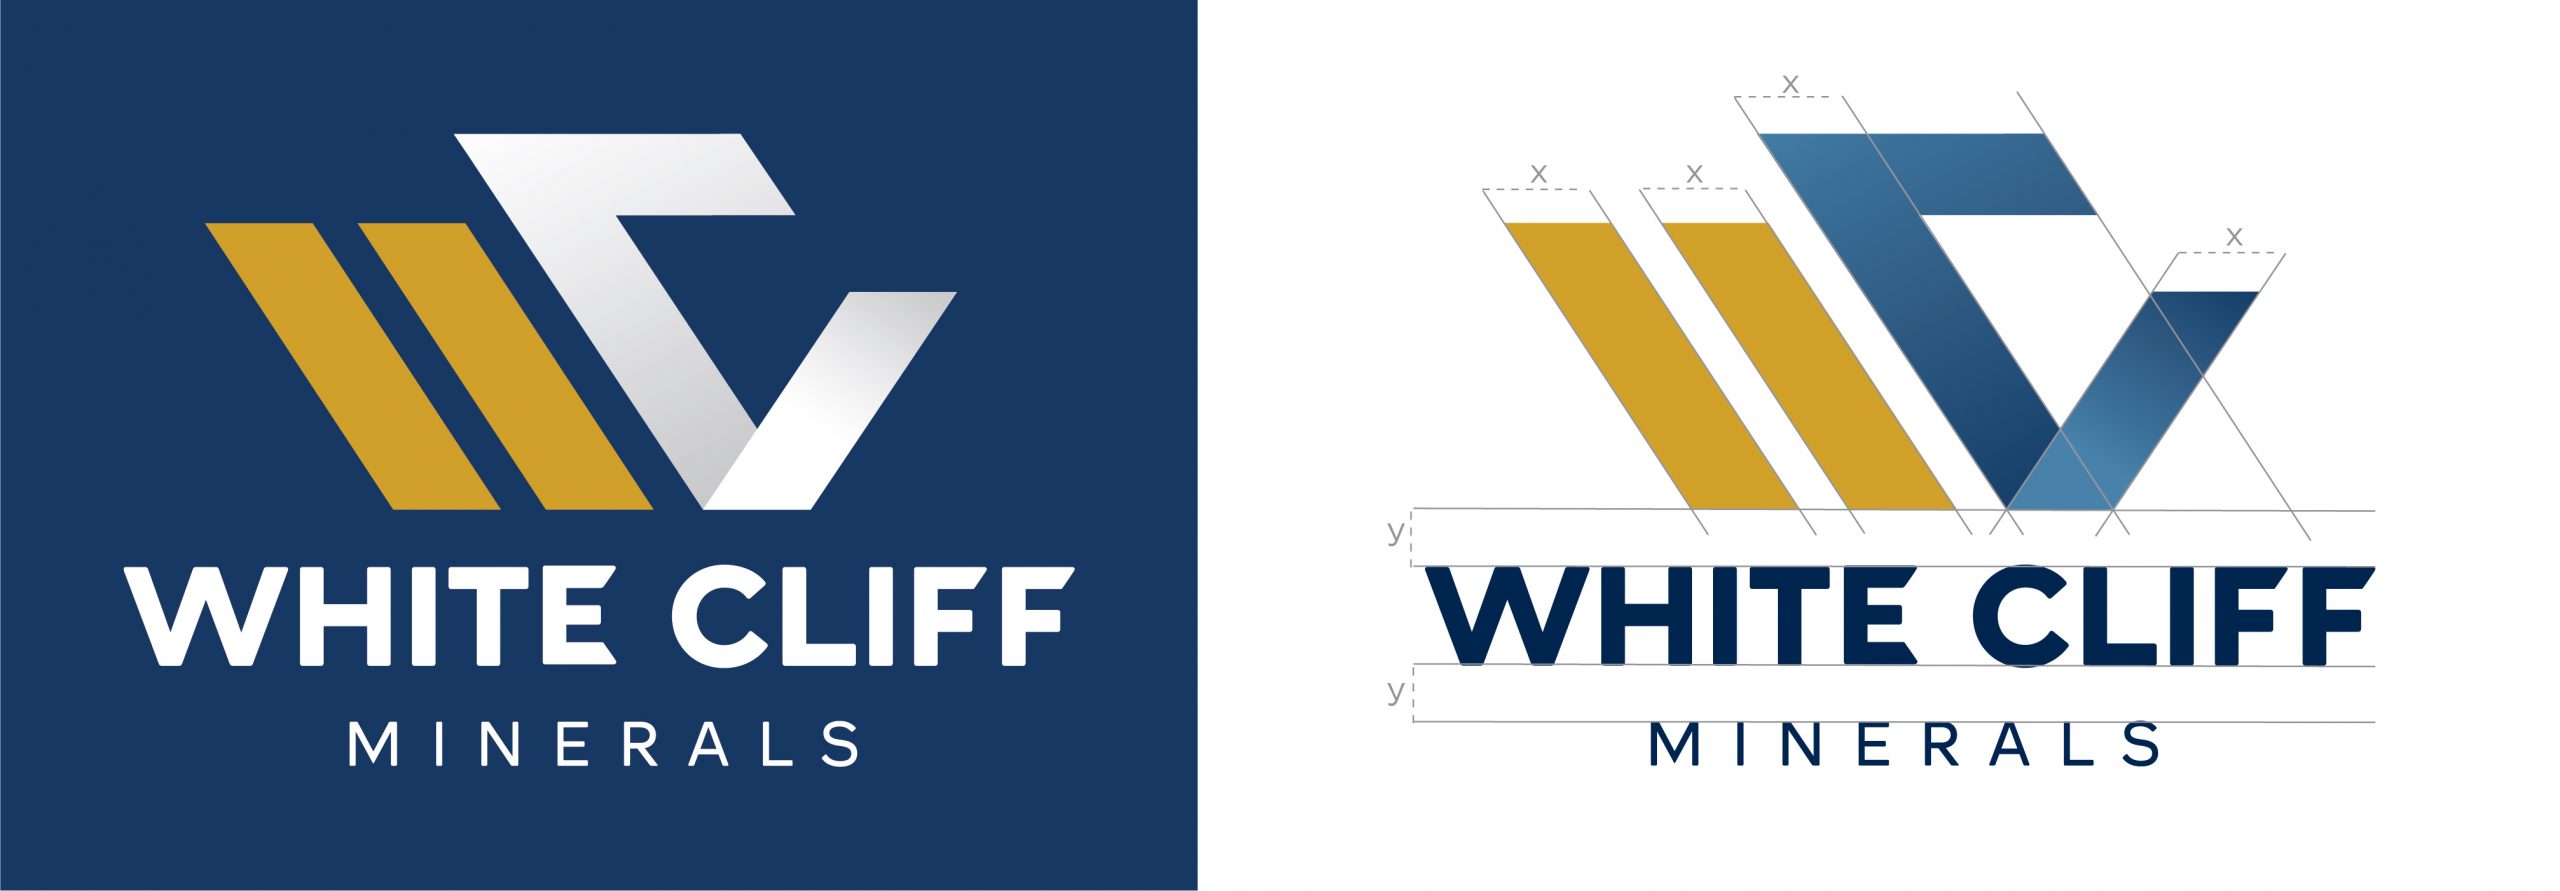 White Cliff Minerals Branding